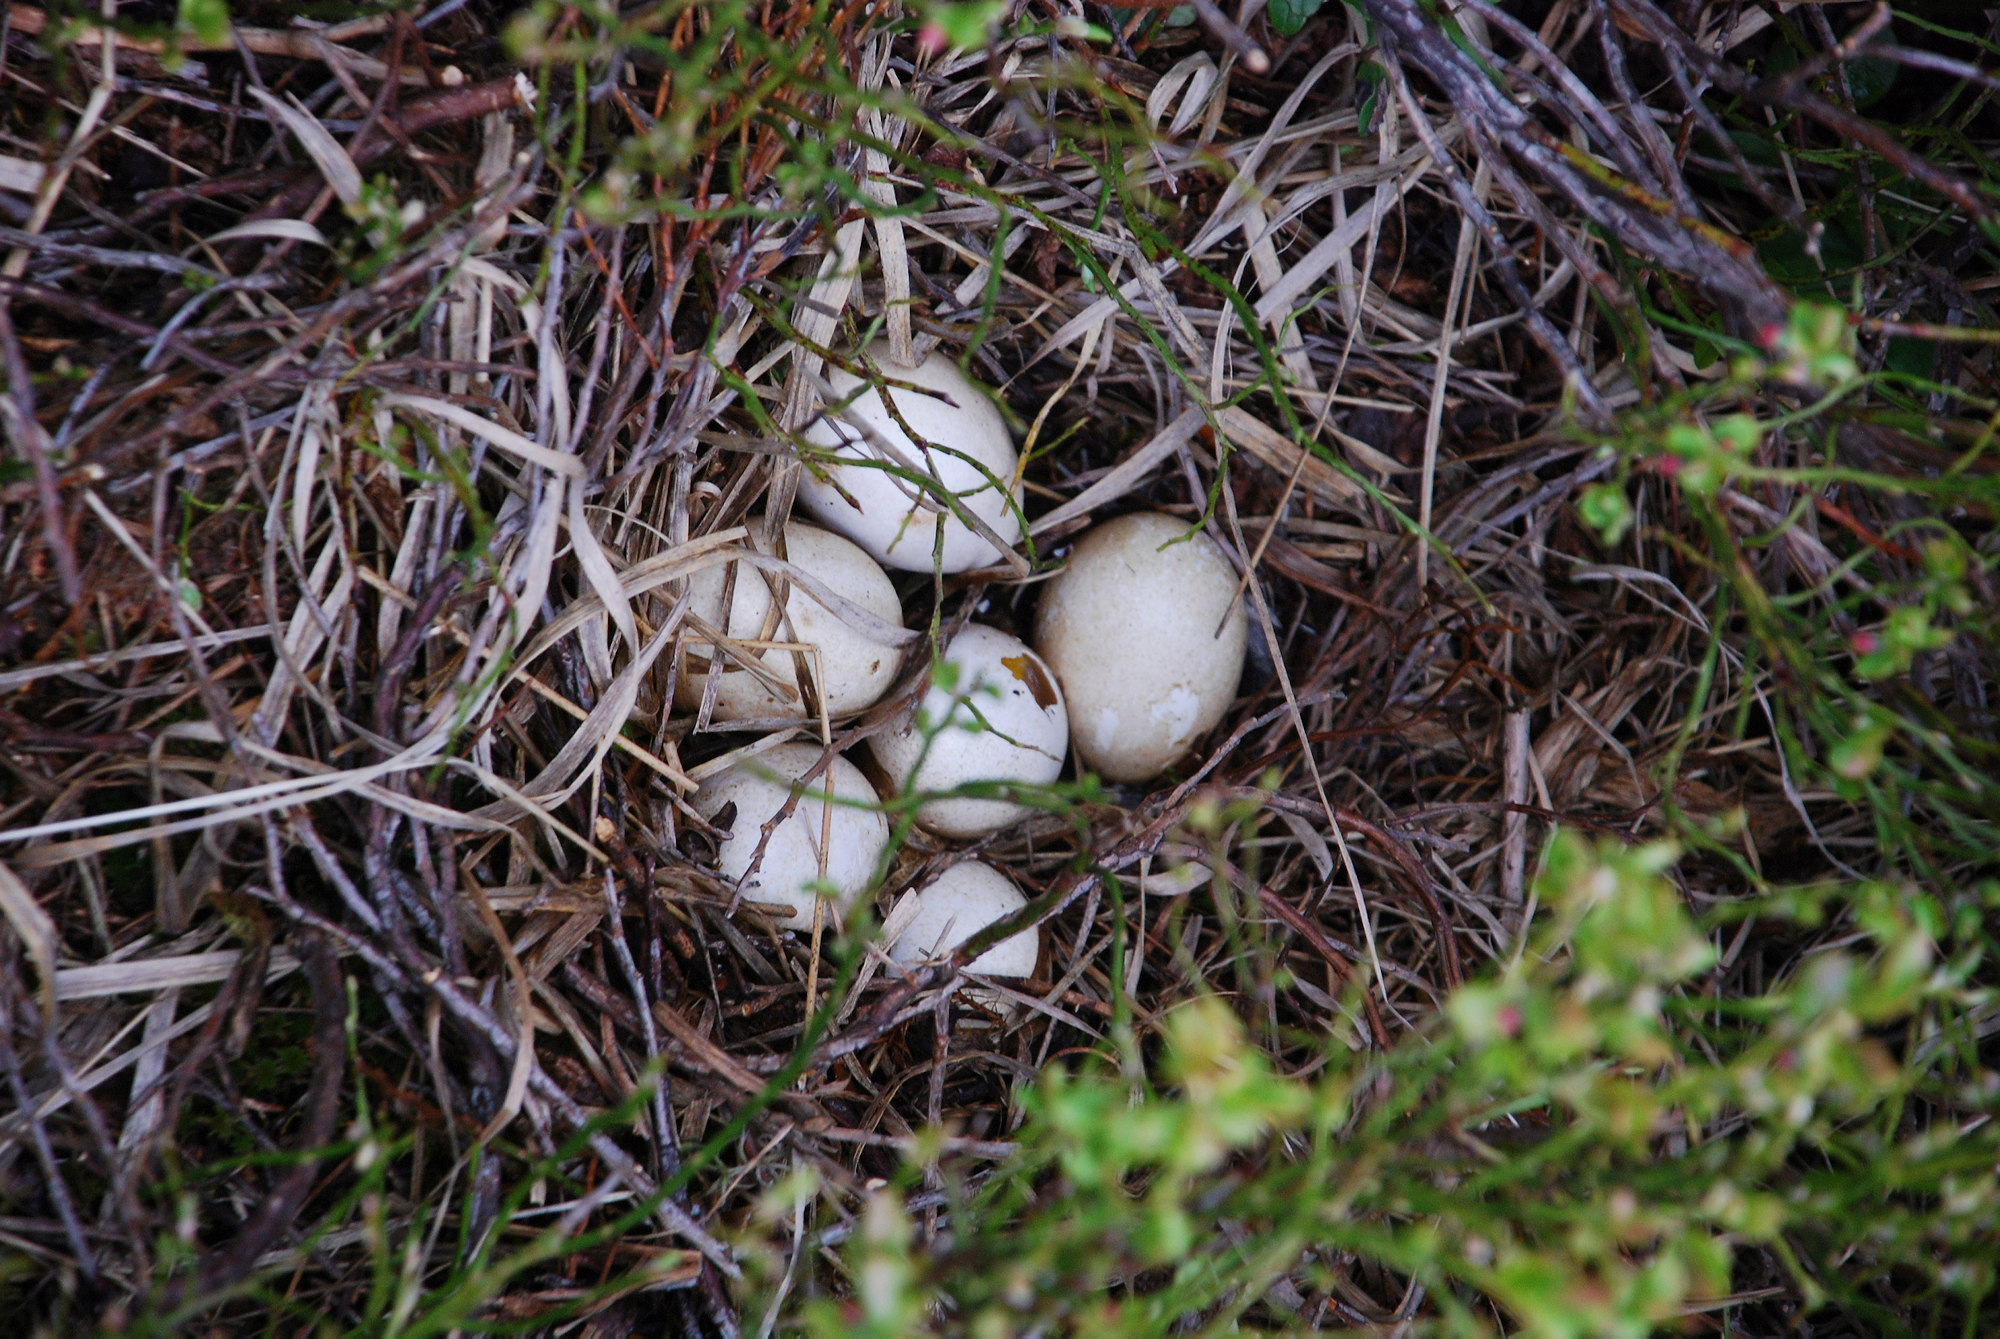 Weiße, leicht gesprenkelte Vogeleier in einem Nest auf dem Boden zwischen Heidelbeerzweigen.